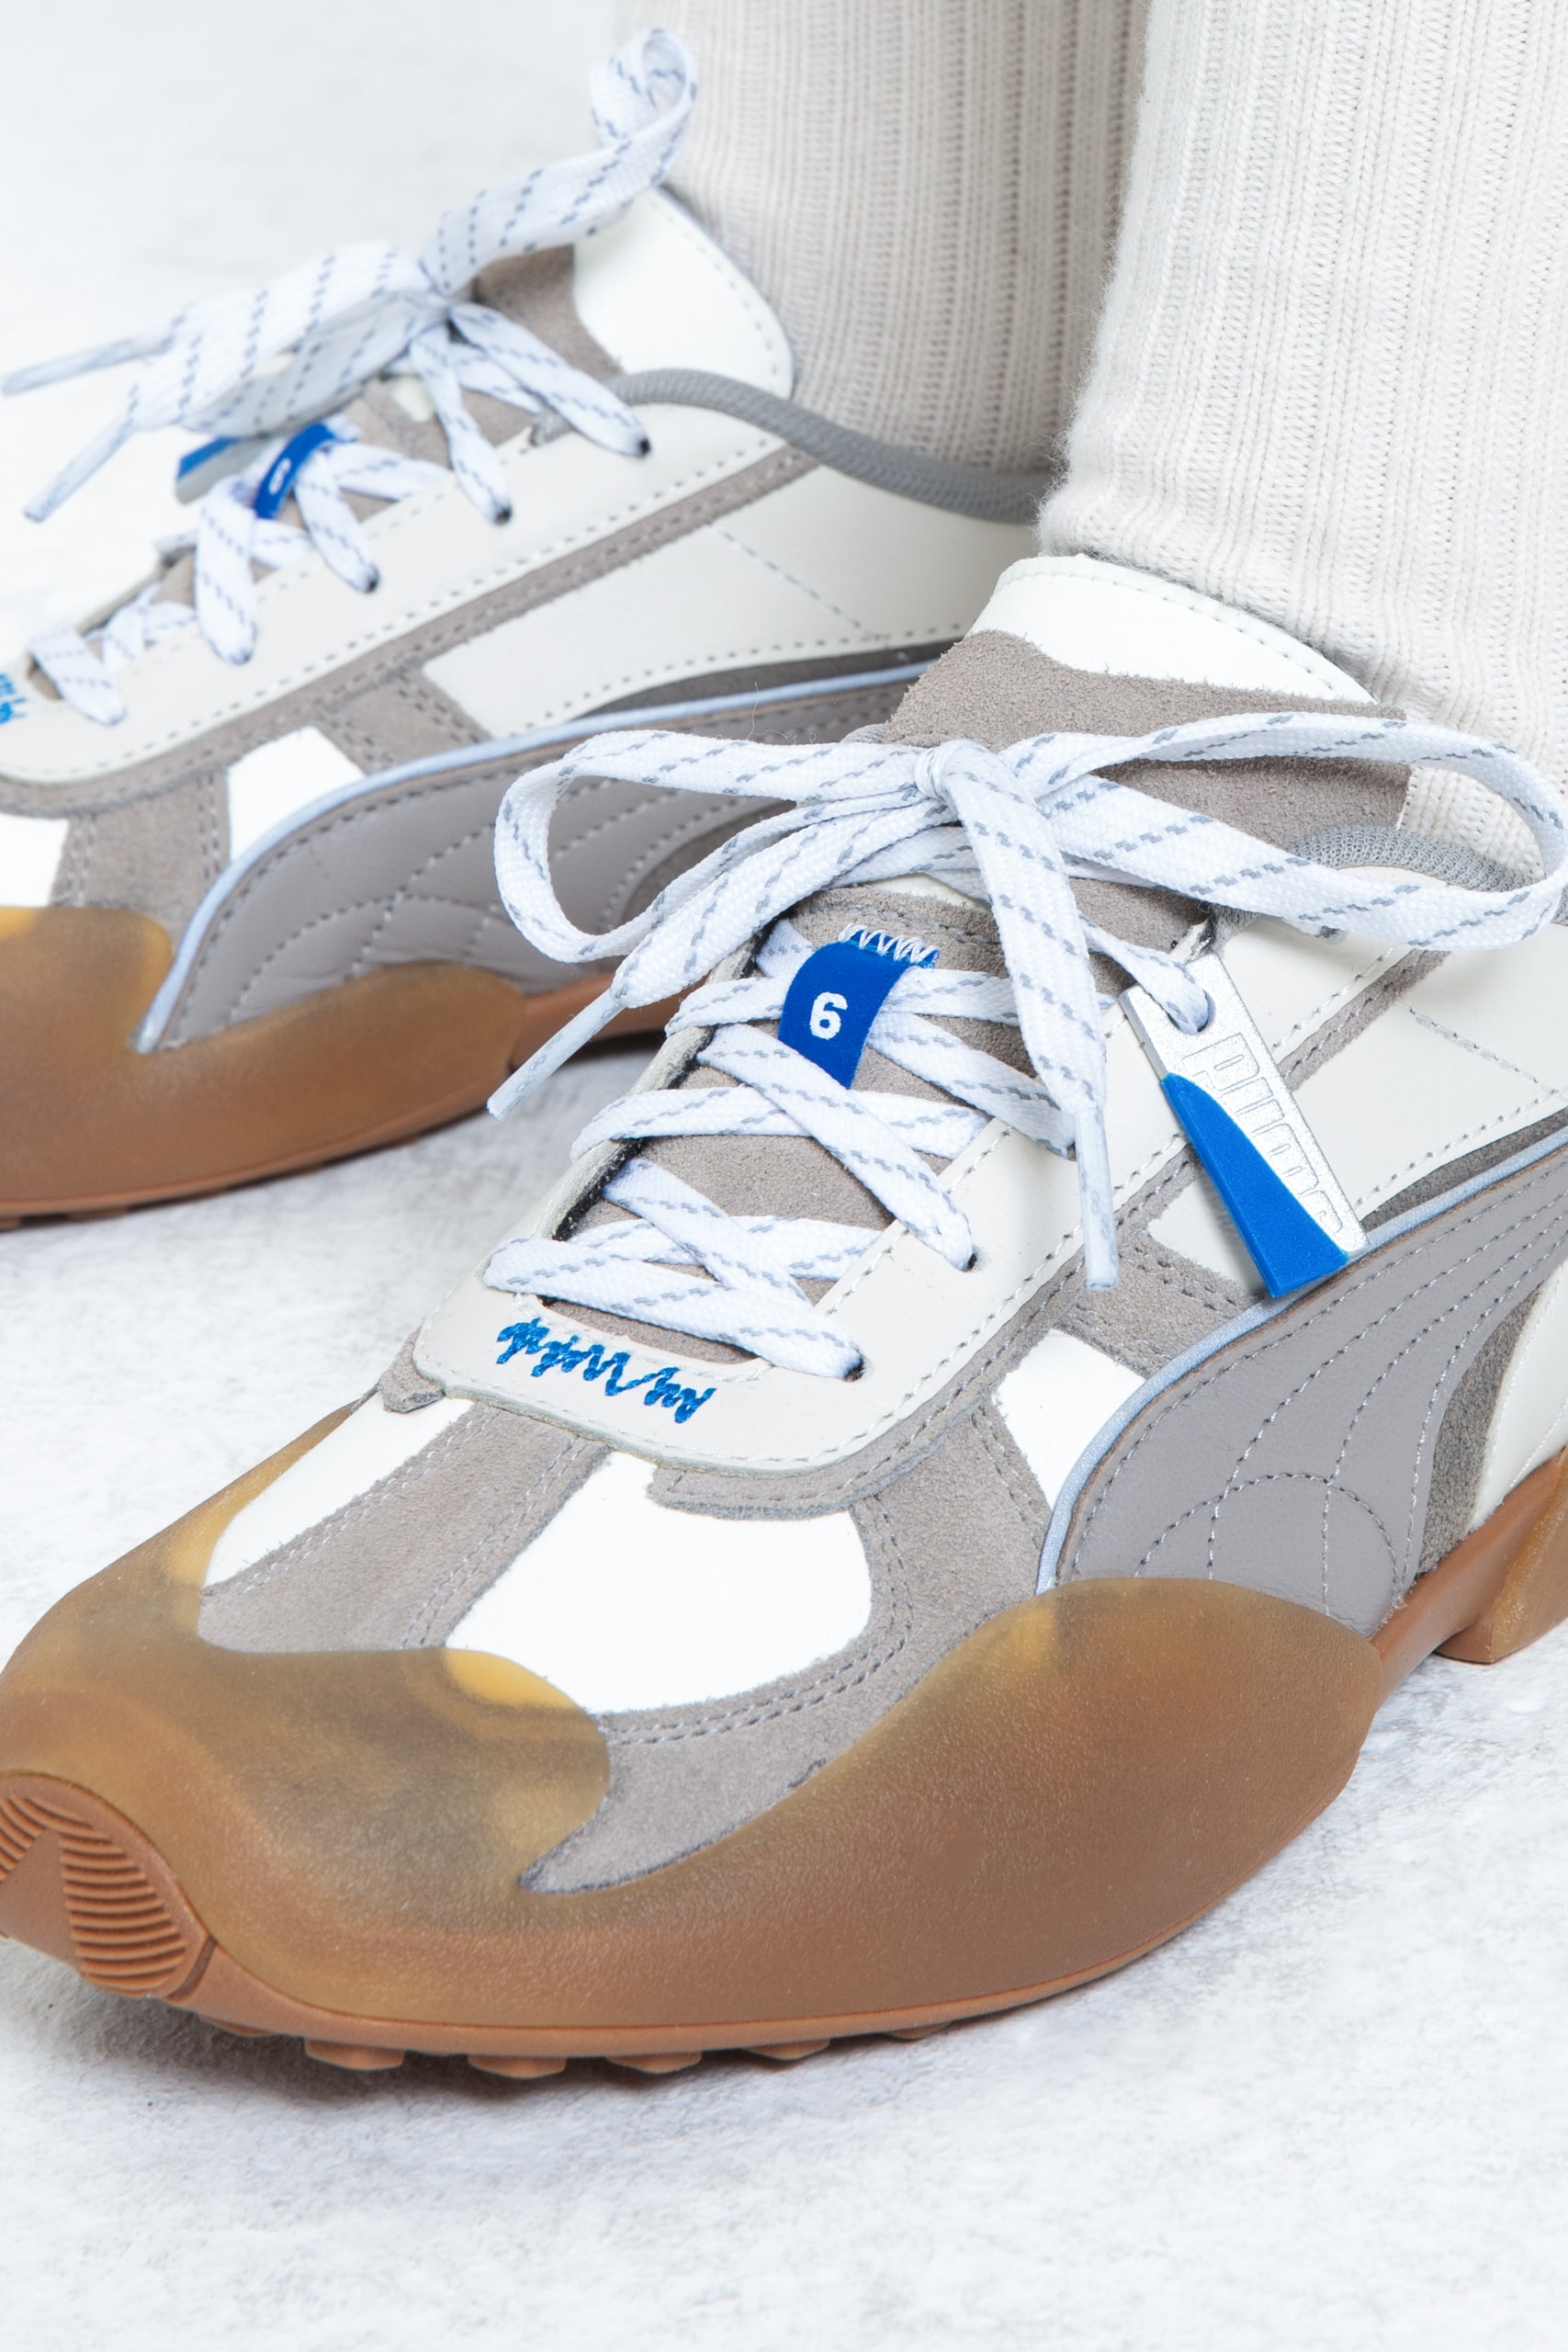 푸마 x 아더에러의 새로운 스니커 '베이더런' 출시 정보 puma adererror vaderon sneaker collaboration collection project